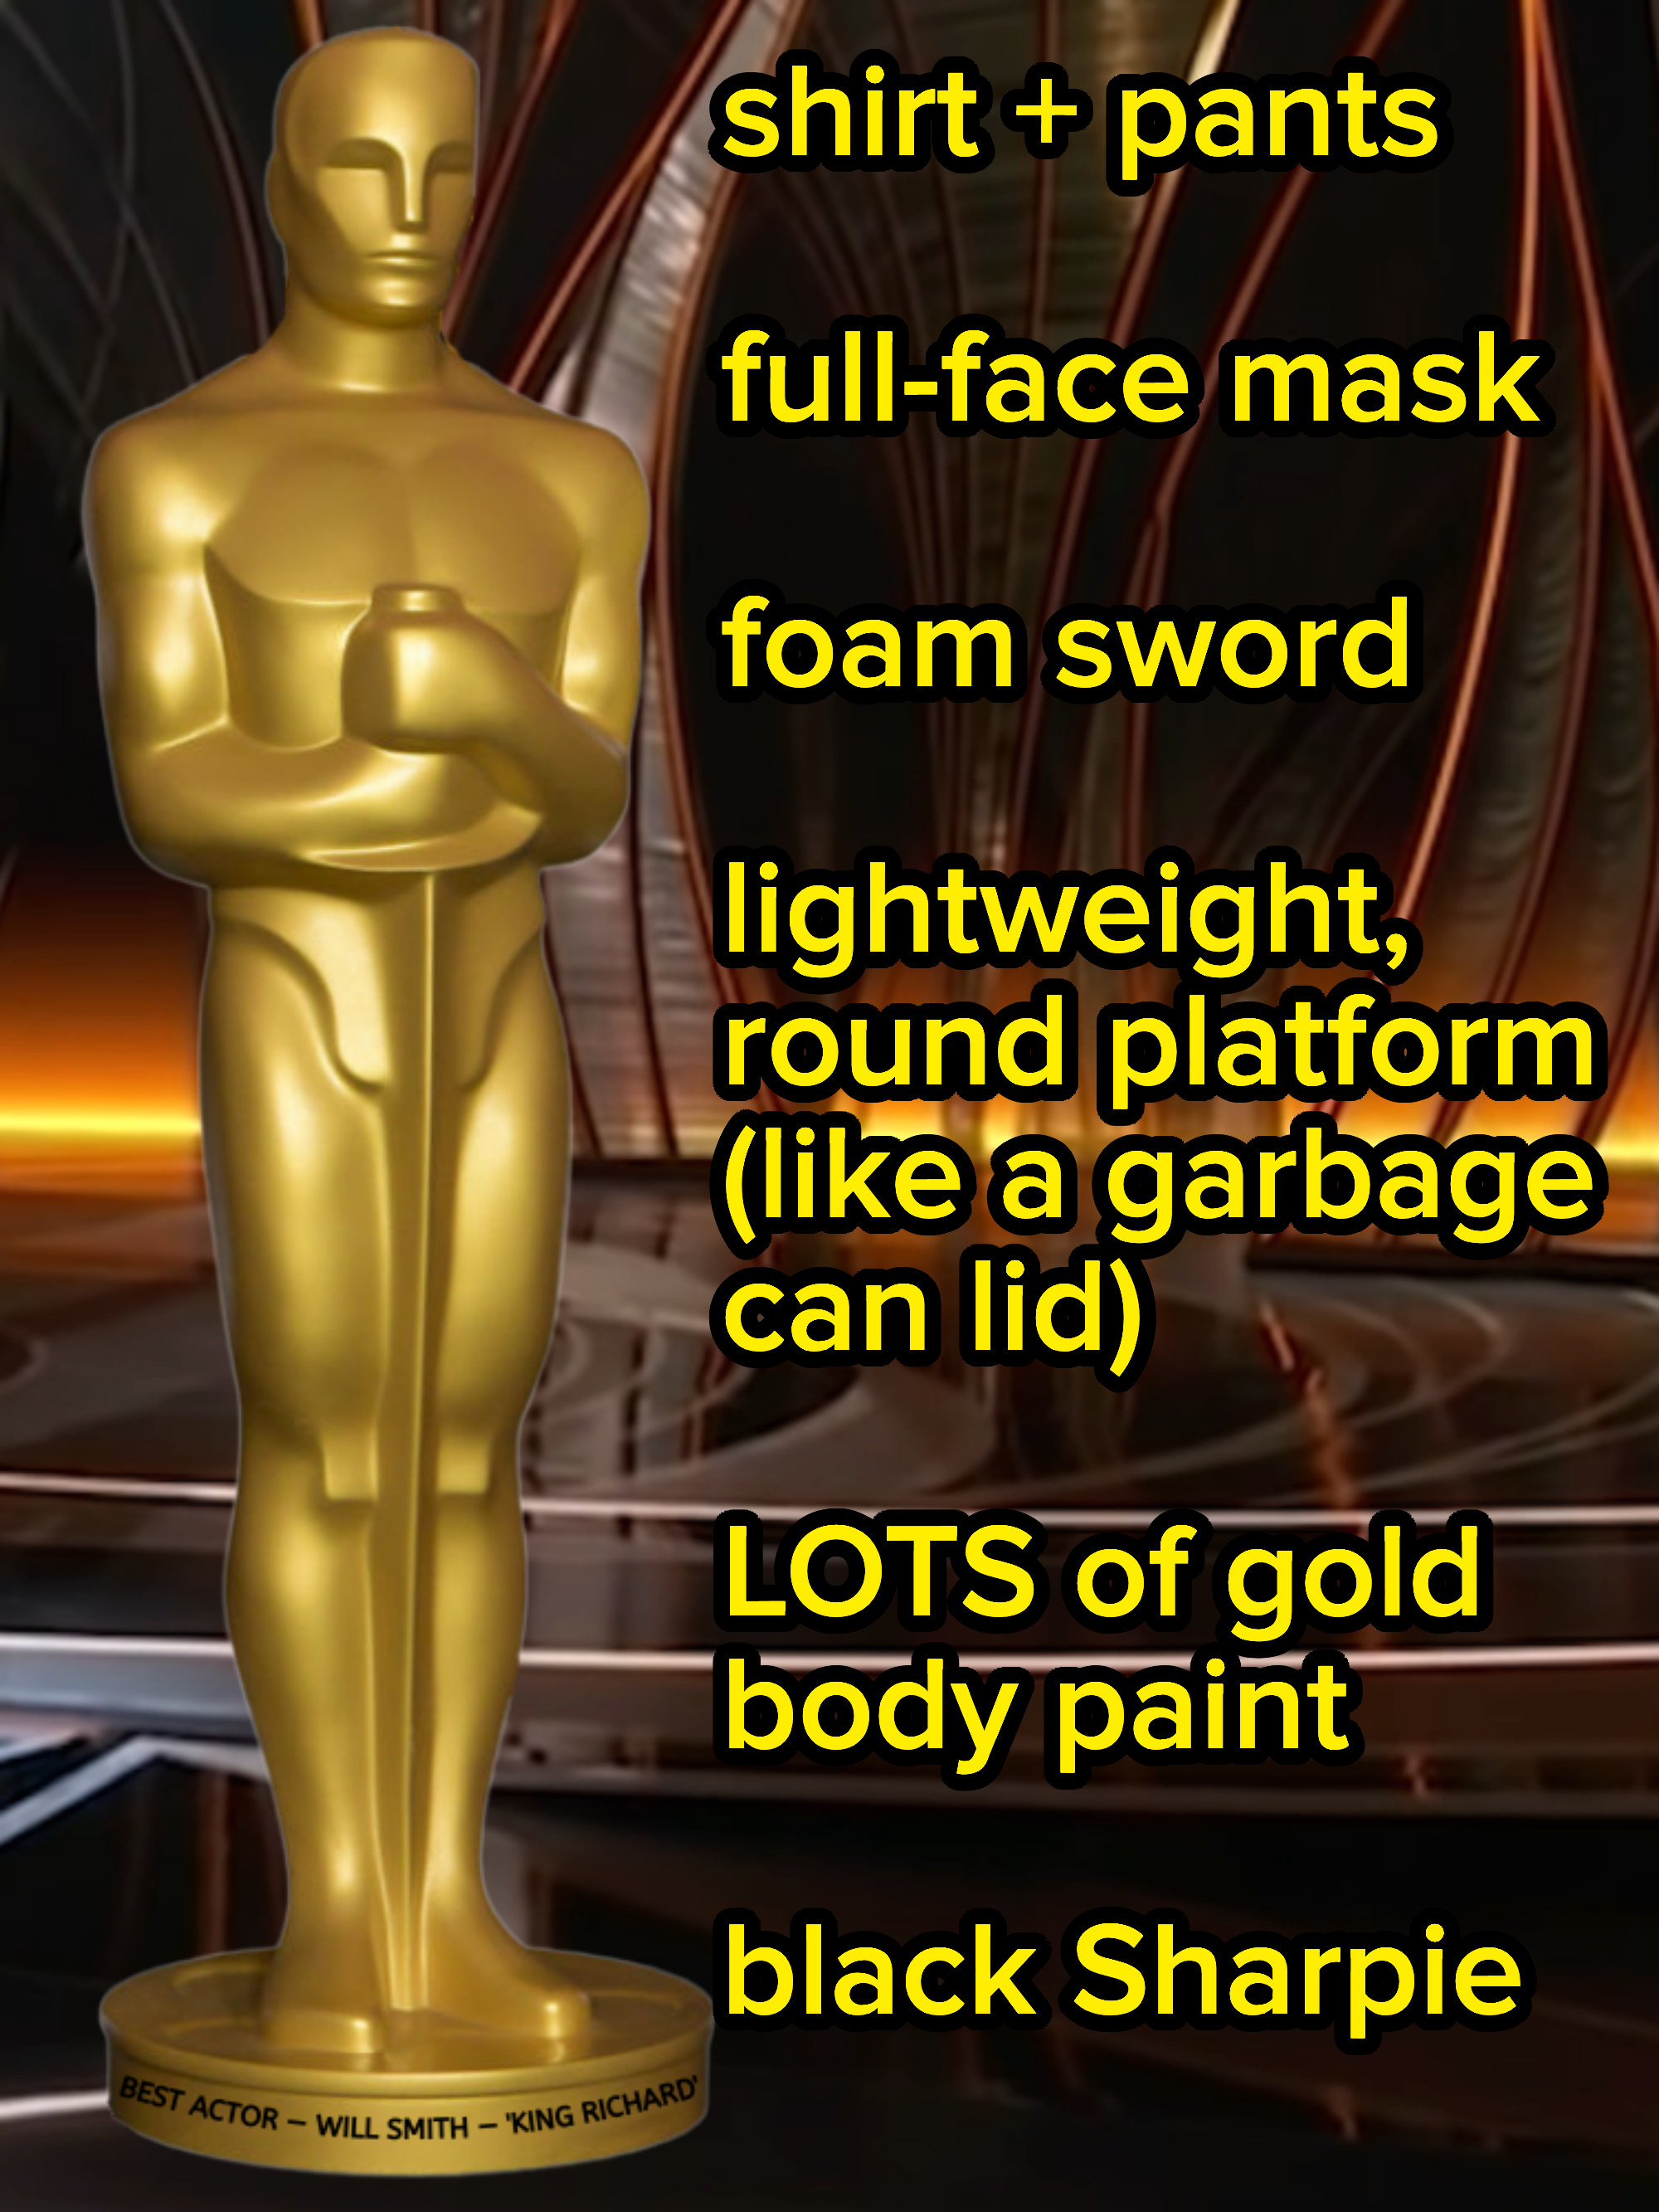 closeup of the gold award